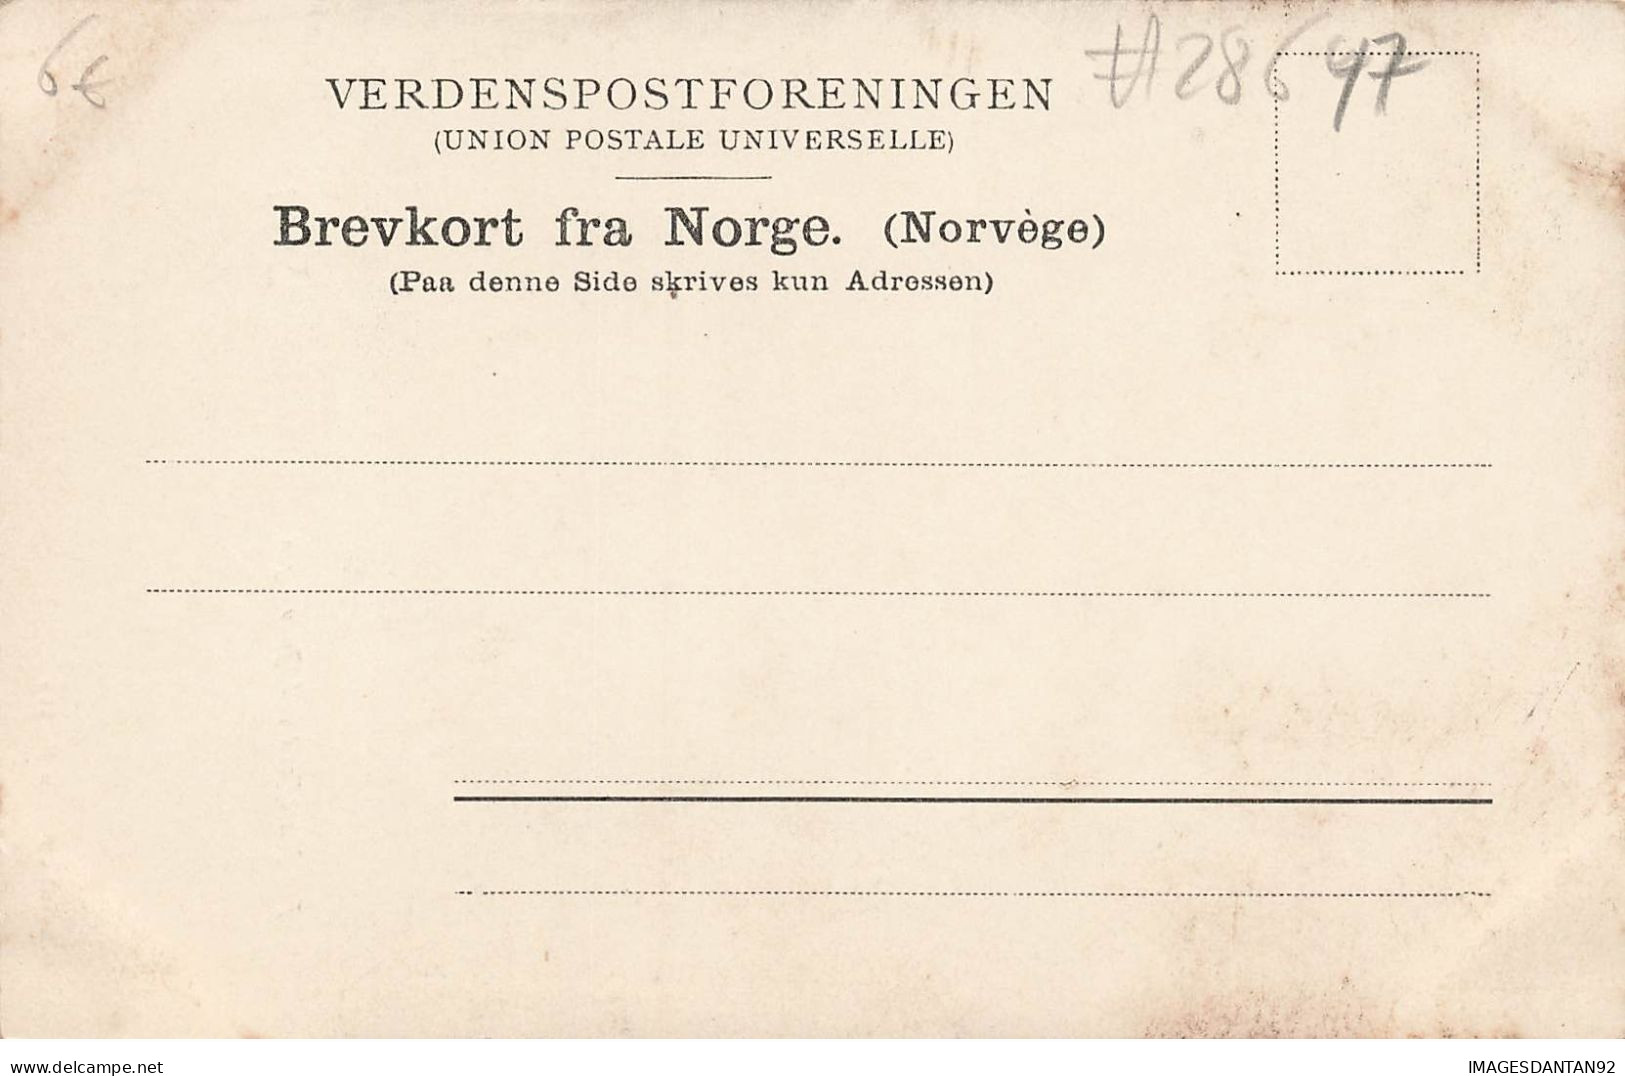 NORVEGE #28647 NORWEGEN SOGN FRA NOERDFJORD VED GUDVANGEN - Norvegia